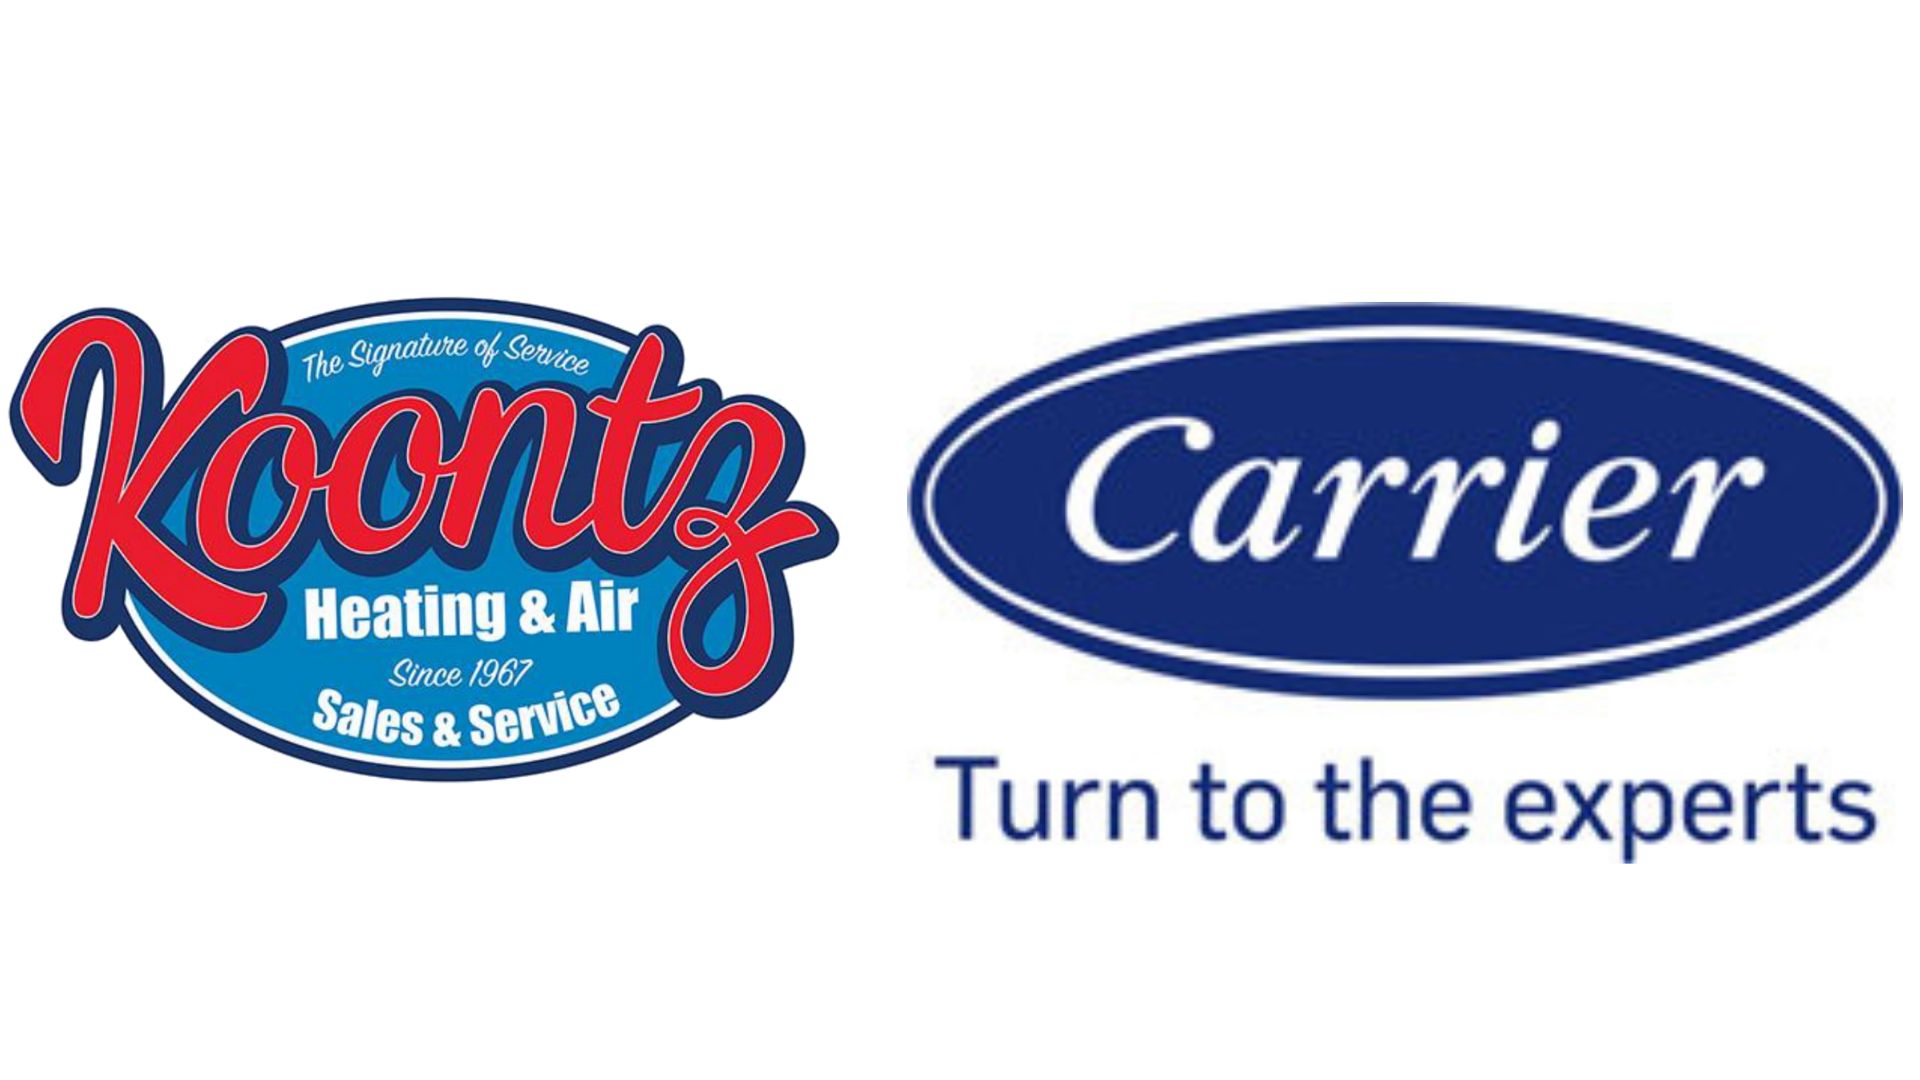 Koontz Carrier Logos